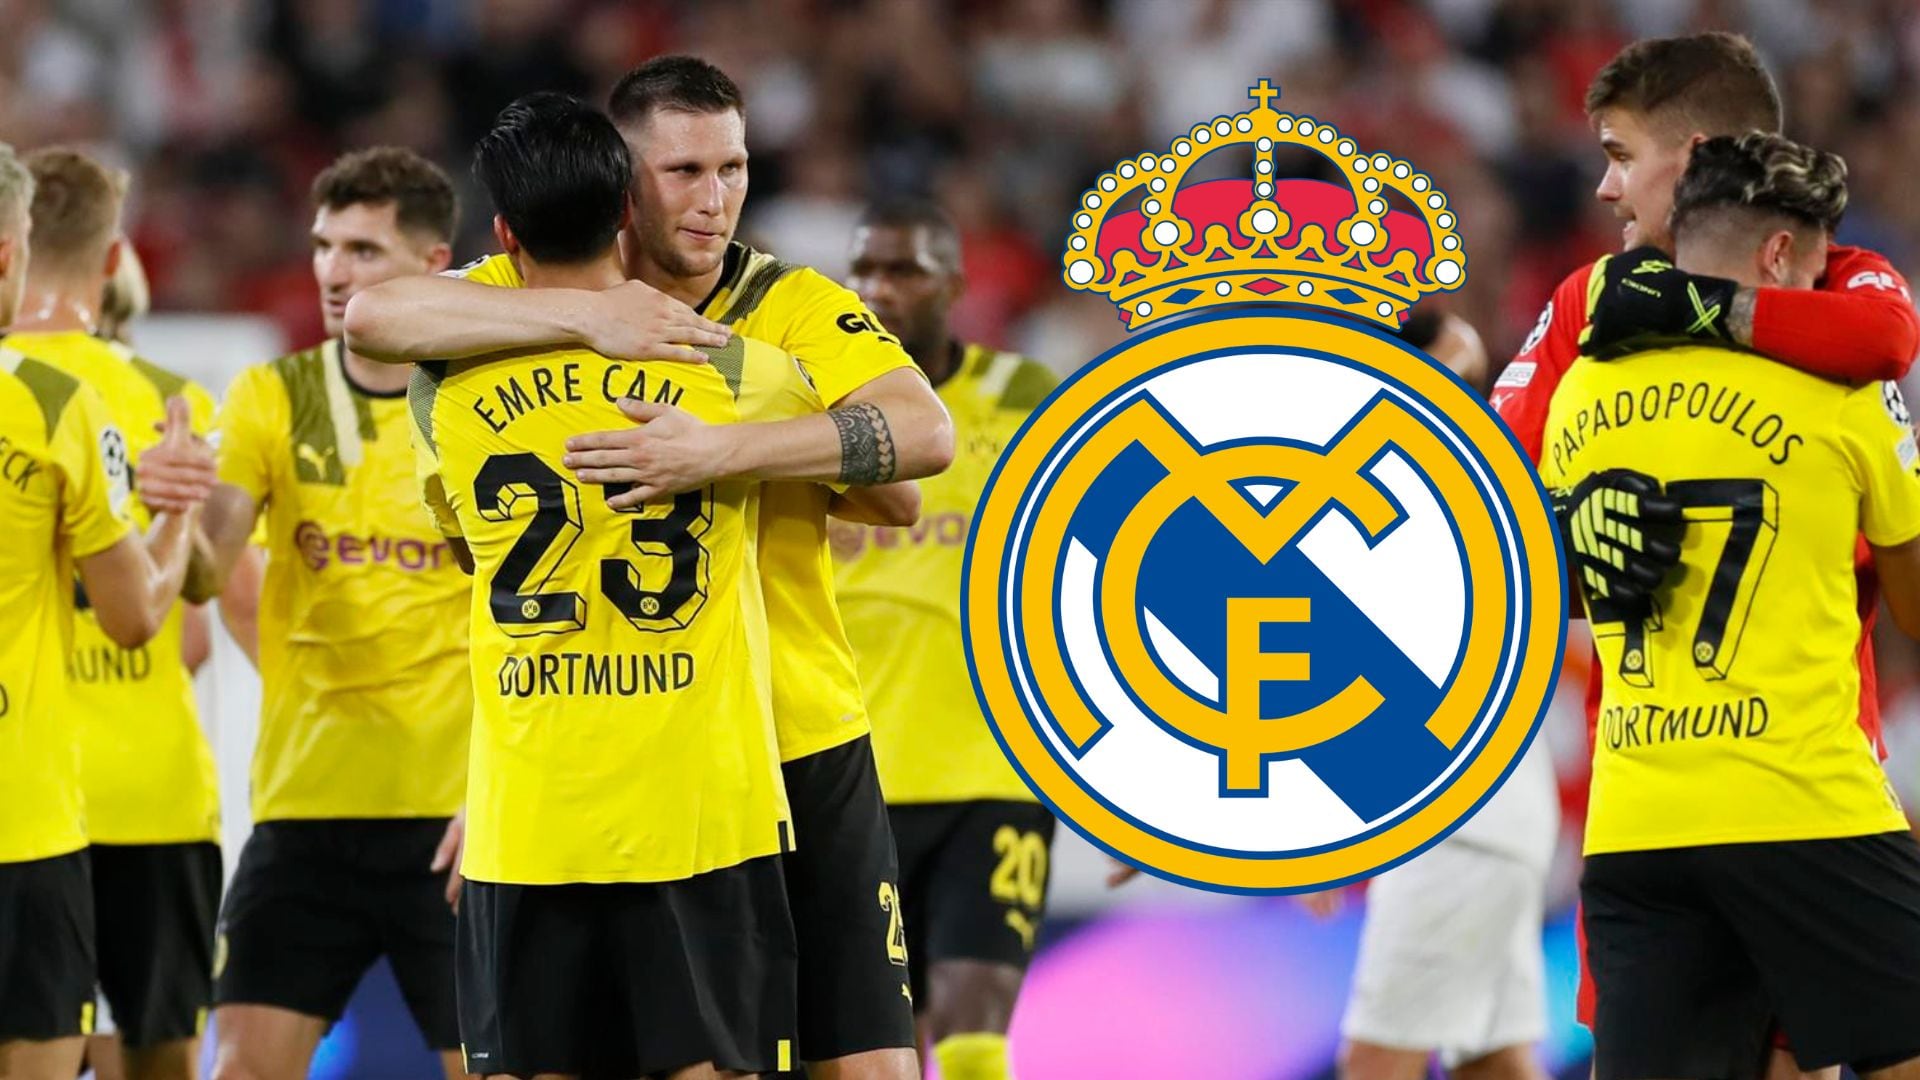 Creen que le ganarán al Real Madrid, lo que dicen en Dortmund antes de la final